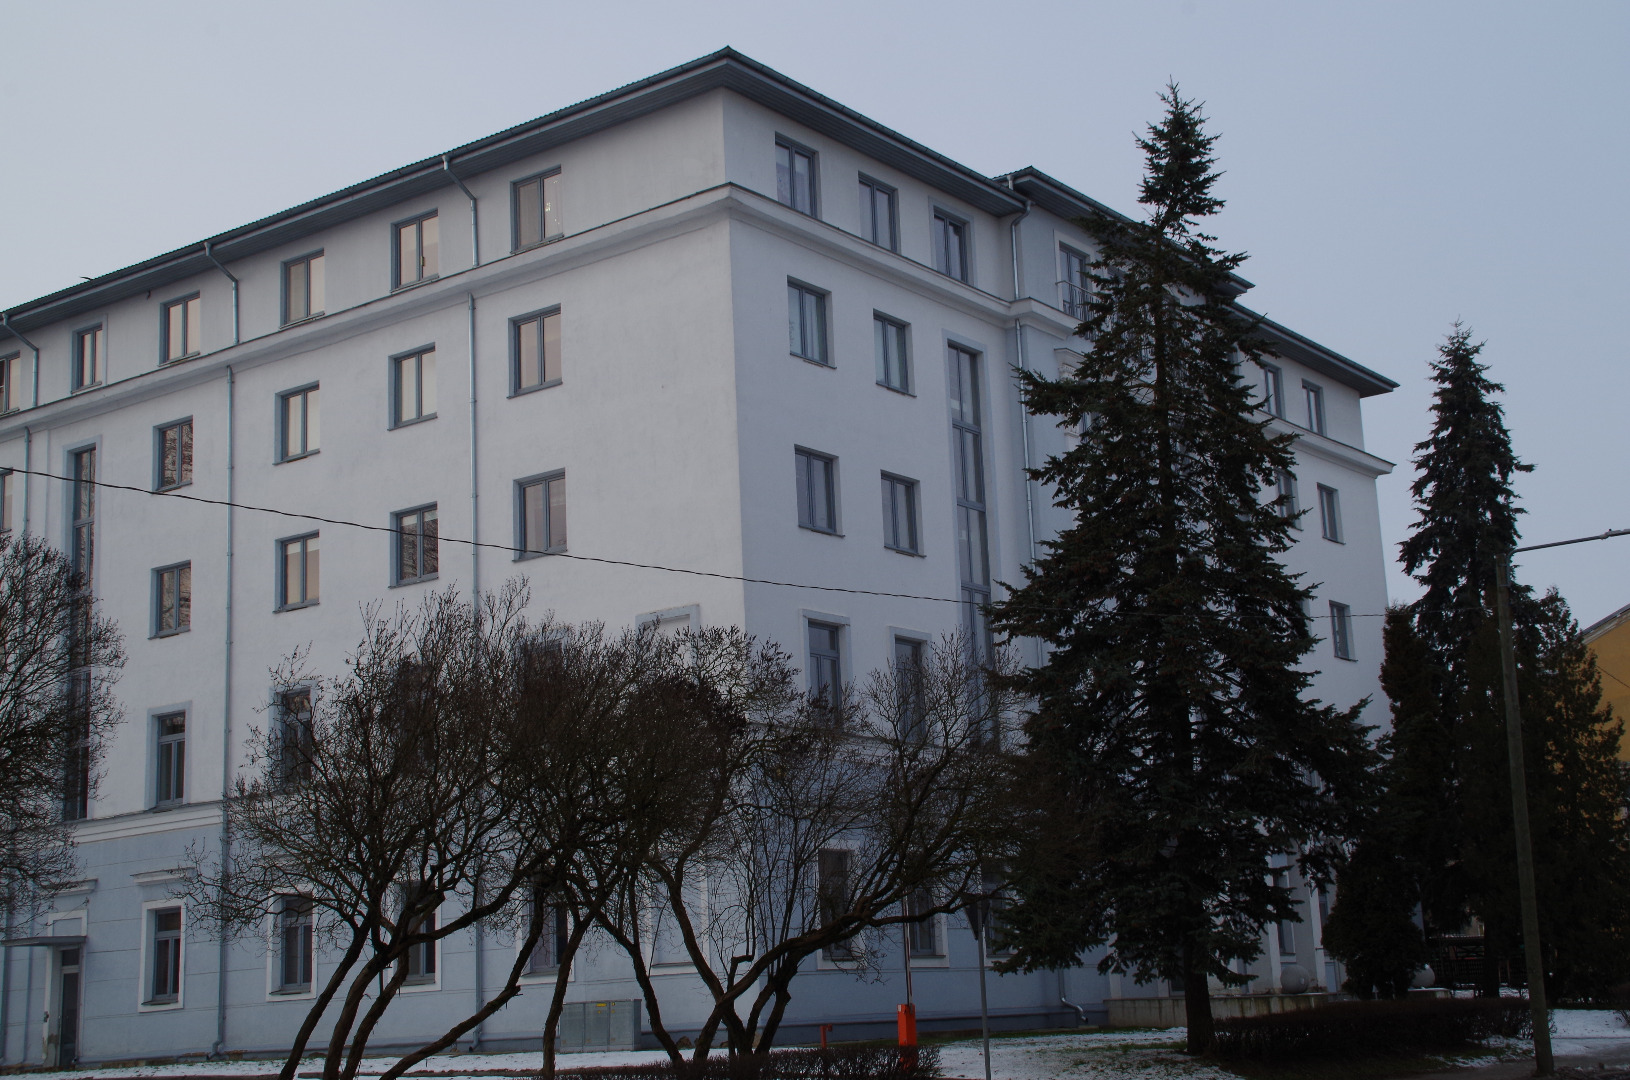 Tartu ülikool, lõpetatakse ühiselamu Pälsoni 23 (Pepleri 23) ehitamist. 1953. Foto Hillar Palamets. rephoto